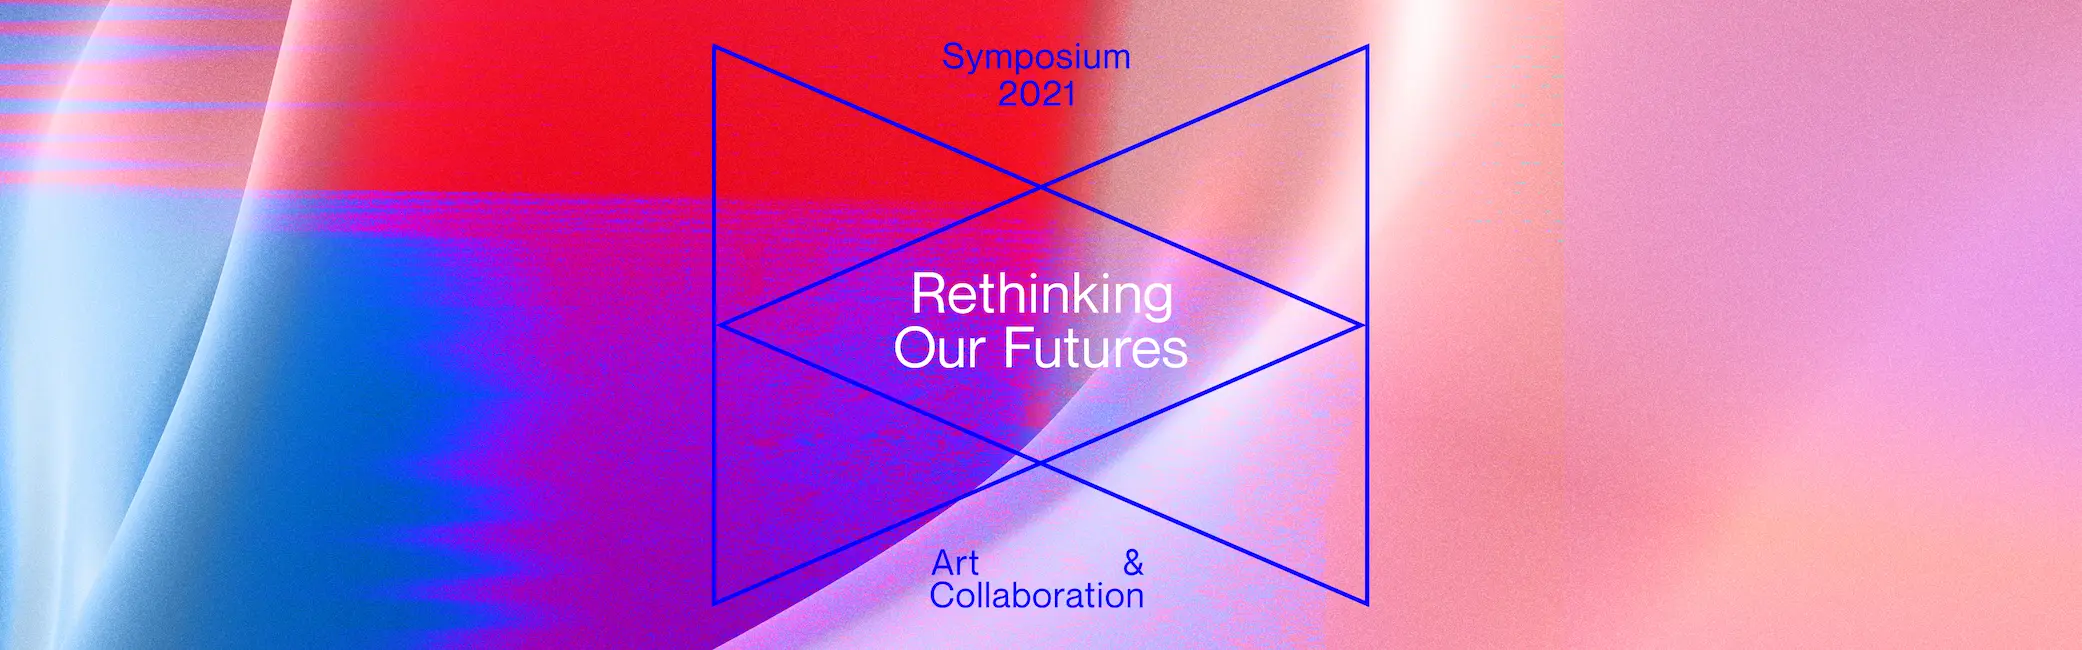 Symposium 2021 Cover image